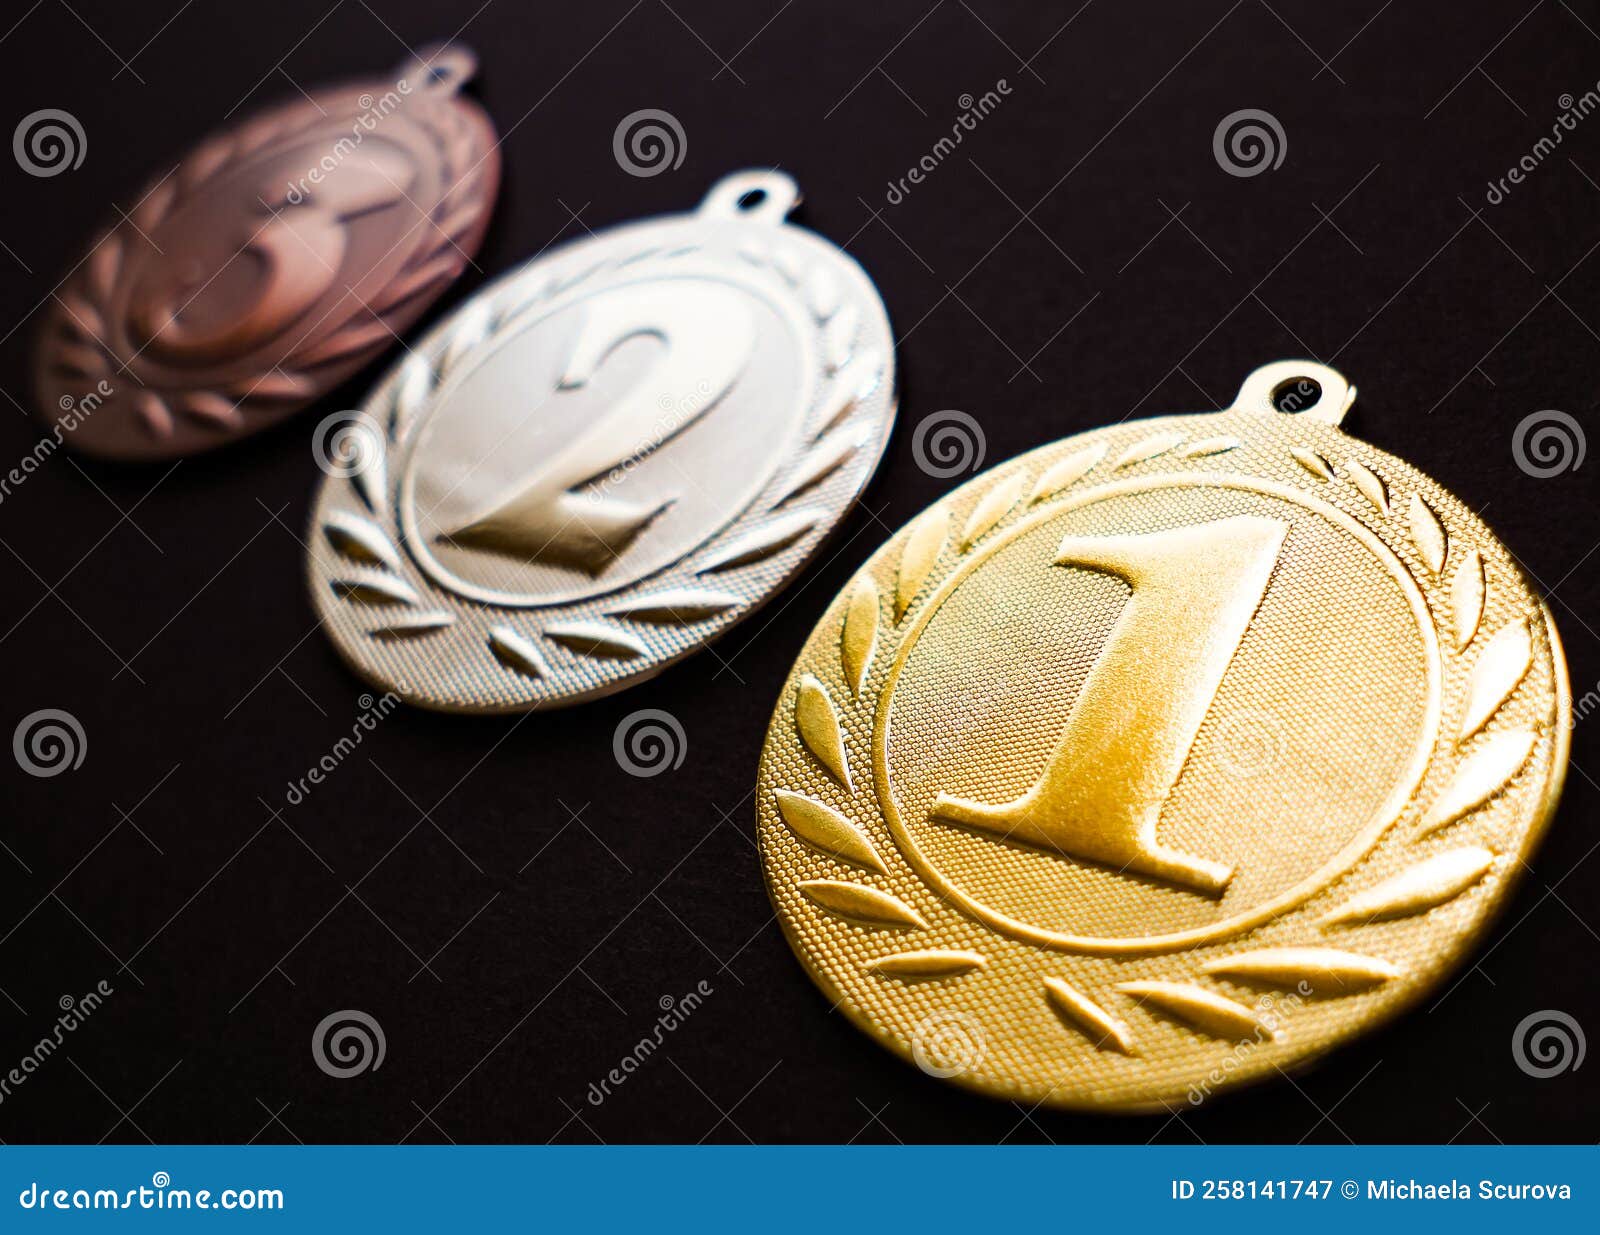 gold silver and bronze medal, medal set, black background, dark edit space